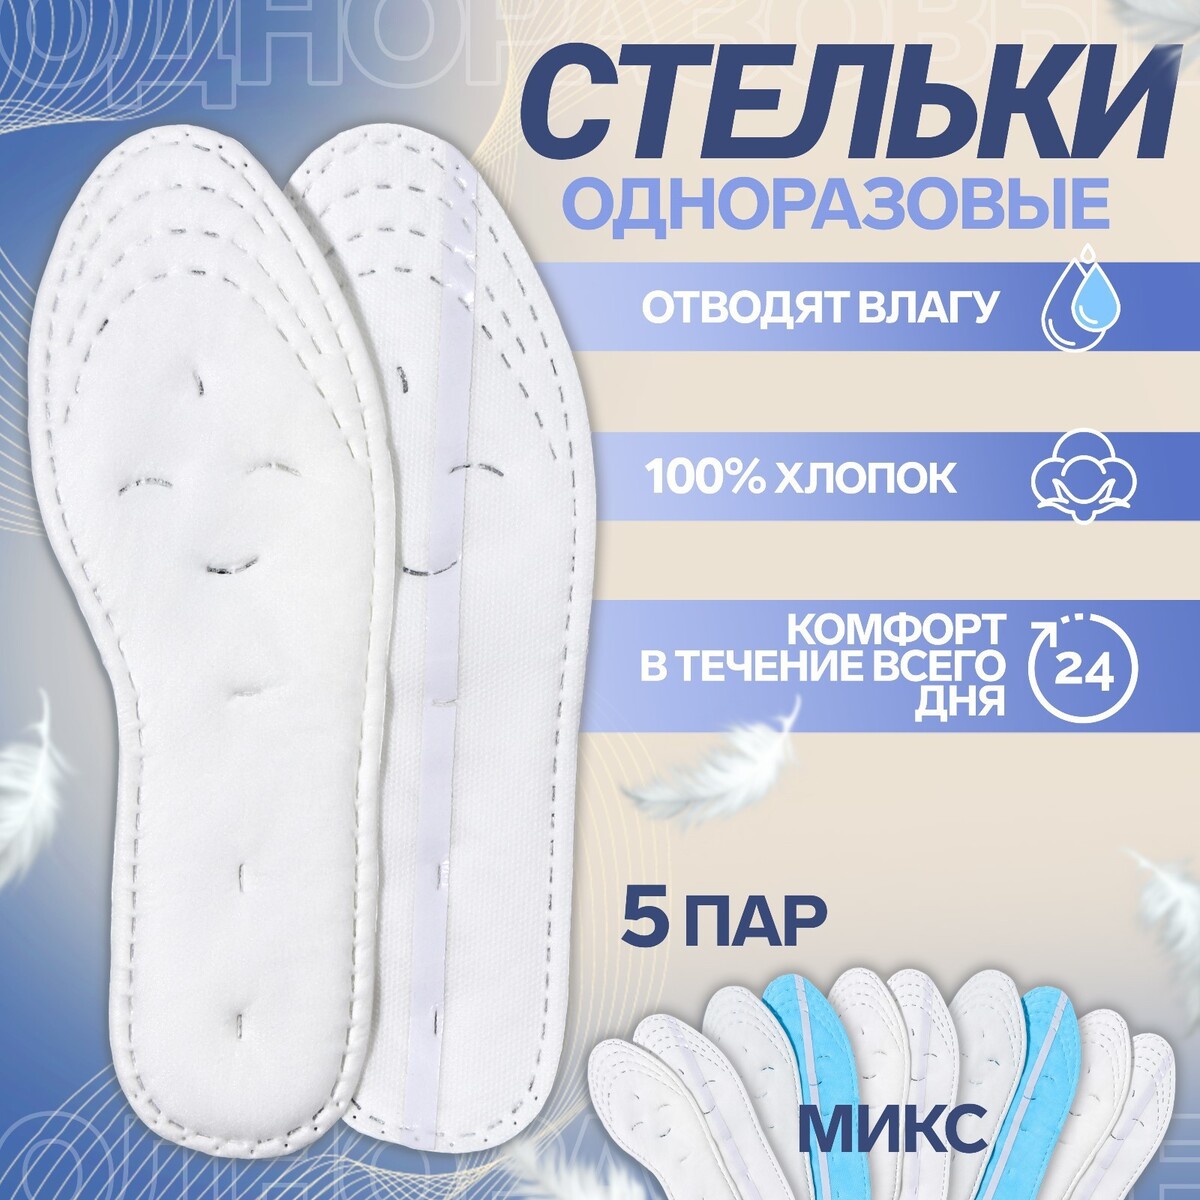 Набор одноразовых для обуви хлопковые универсальные ONLITOP, цвет белый 011074655 - фото 1